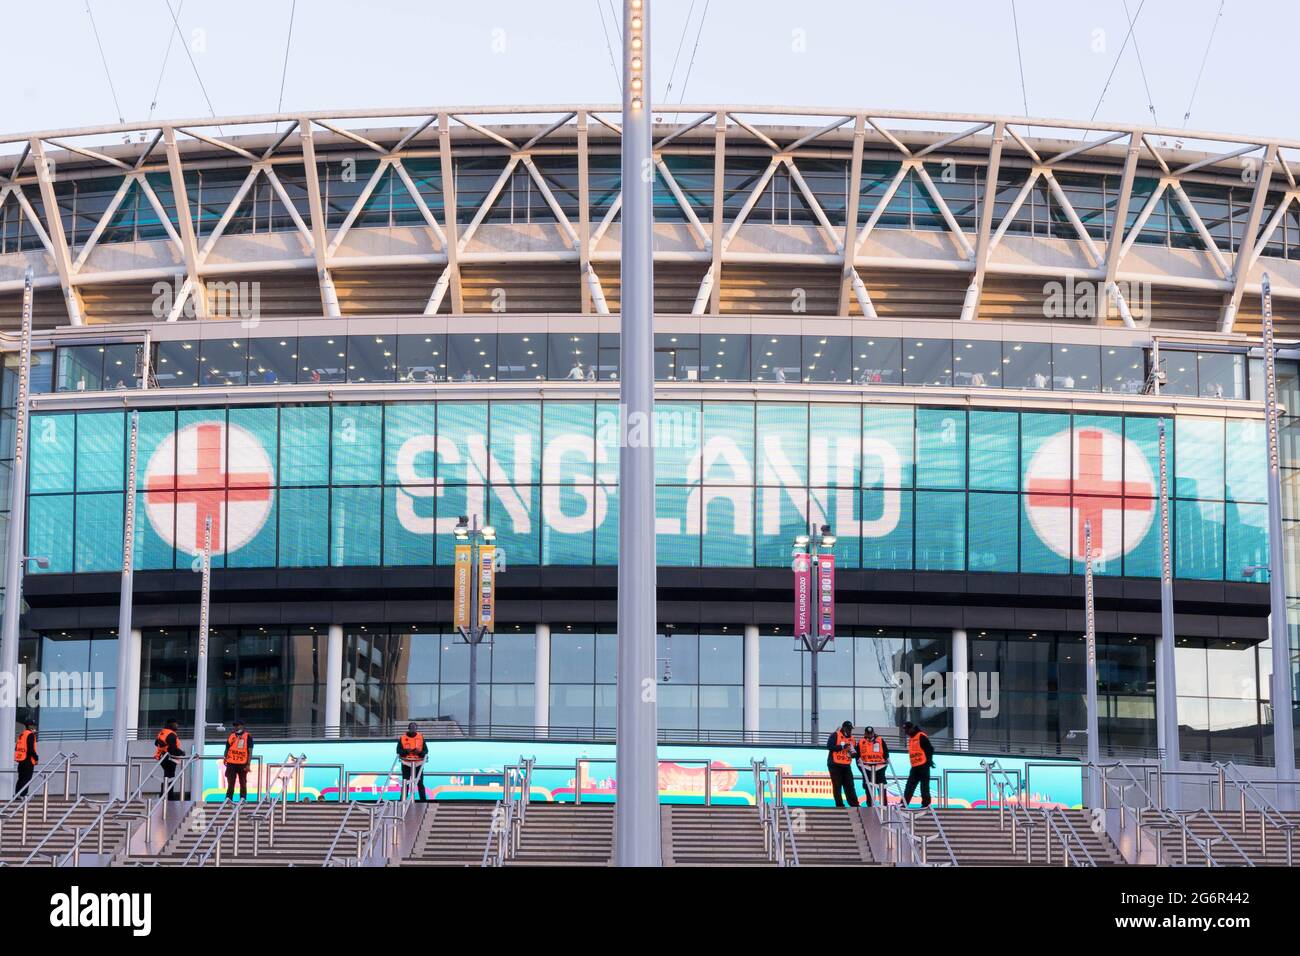 Wort des Teams England und seine Flagge projizierten auf riesigen LED-Bildschirm am Eingang zum Wembley-Stadion, London Stockfoto